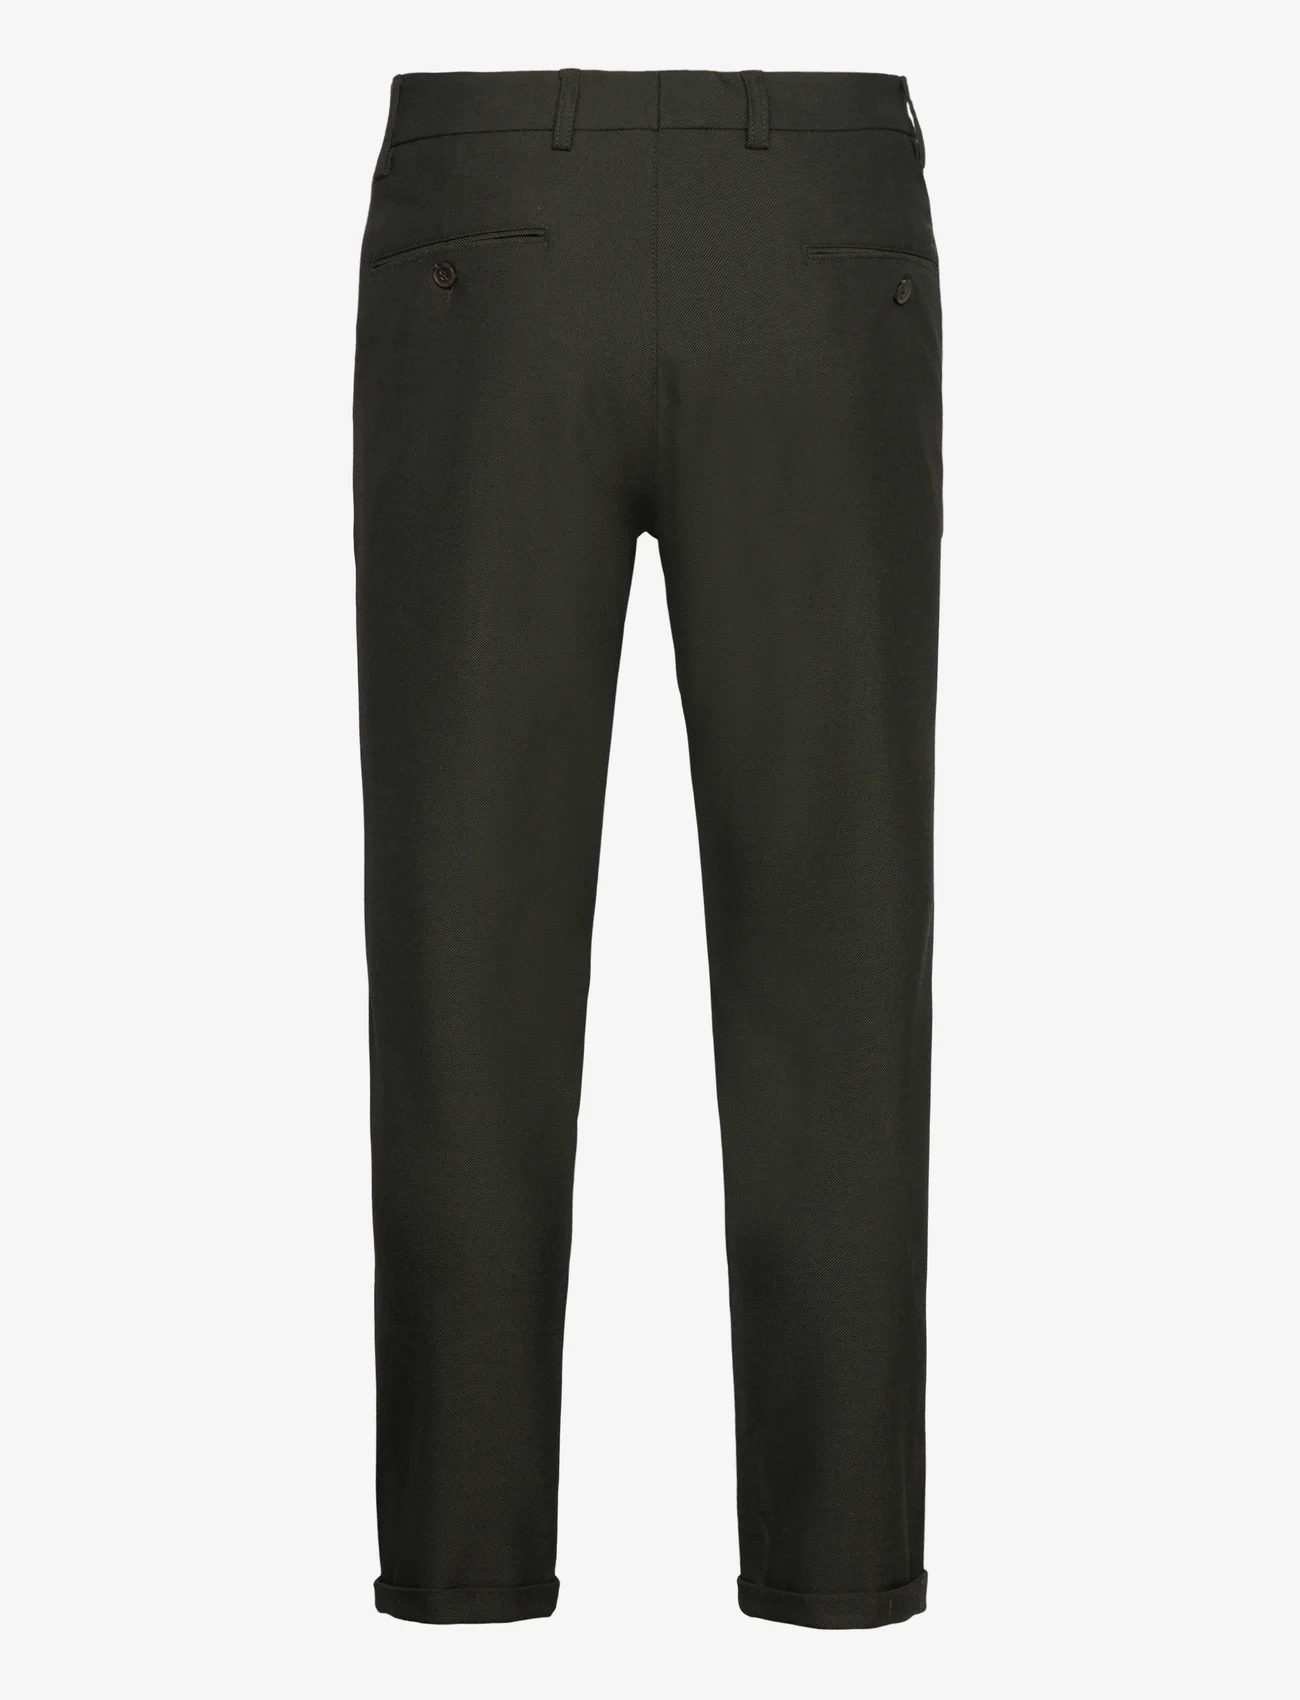 Les Deux - Como Suit Pants - Seasonal - suit trousers - deep forest/charcoal - 1